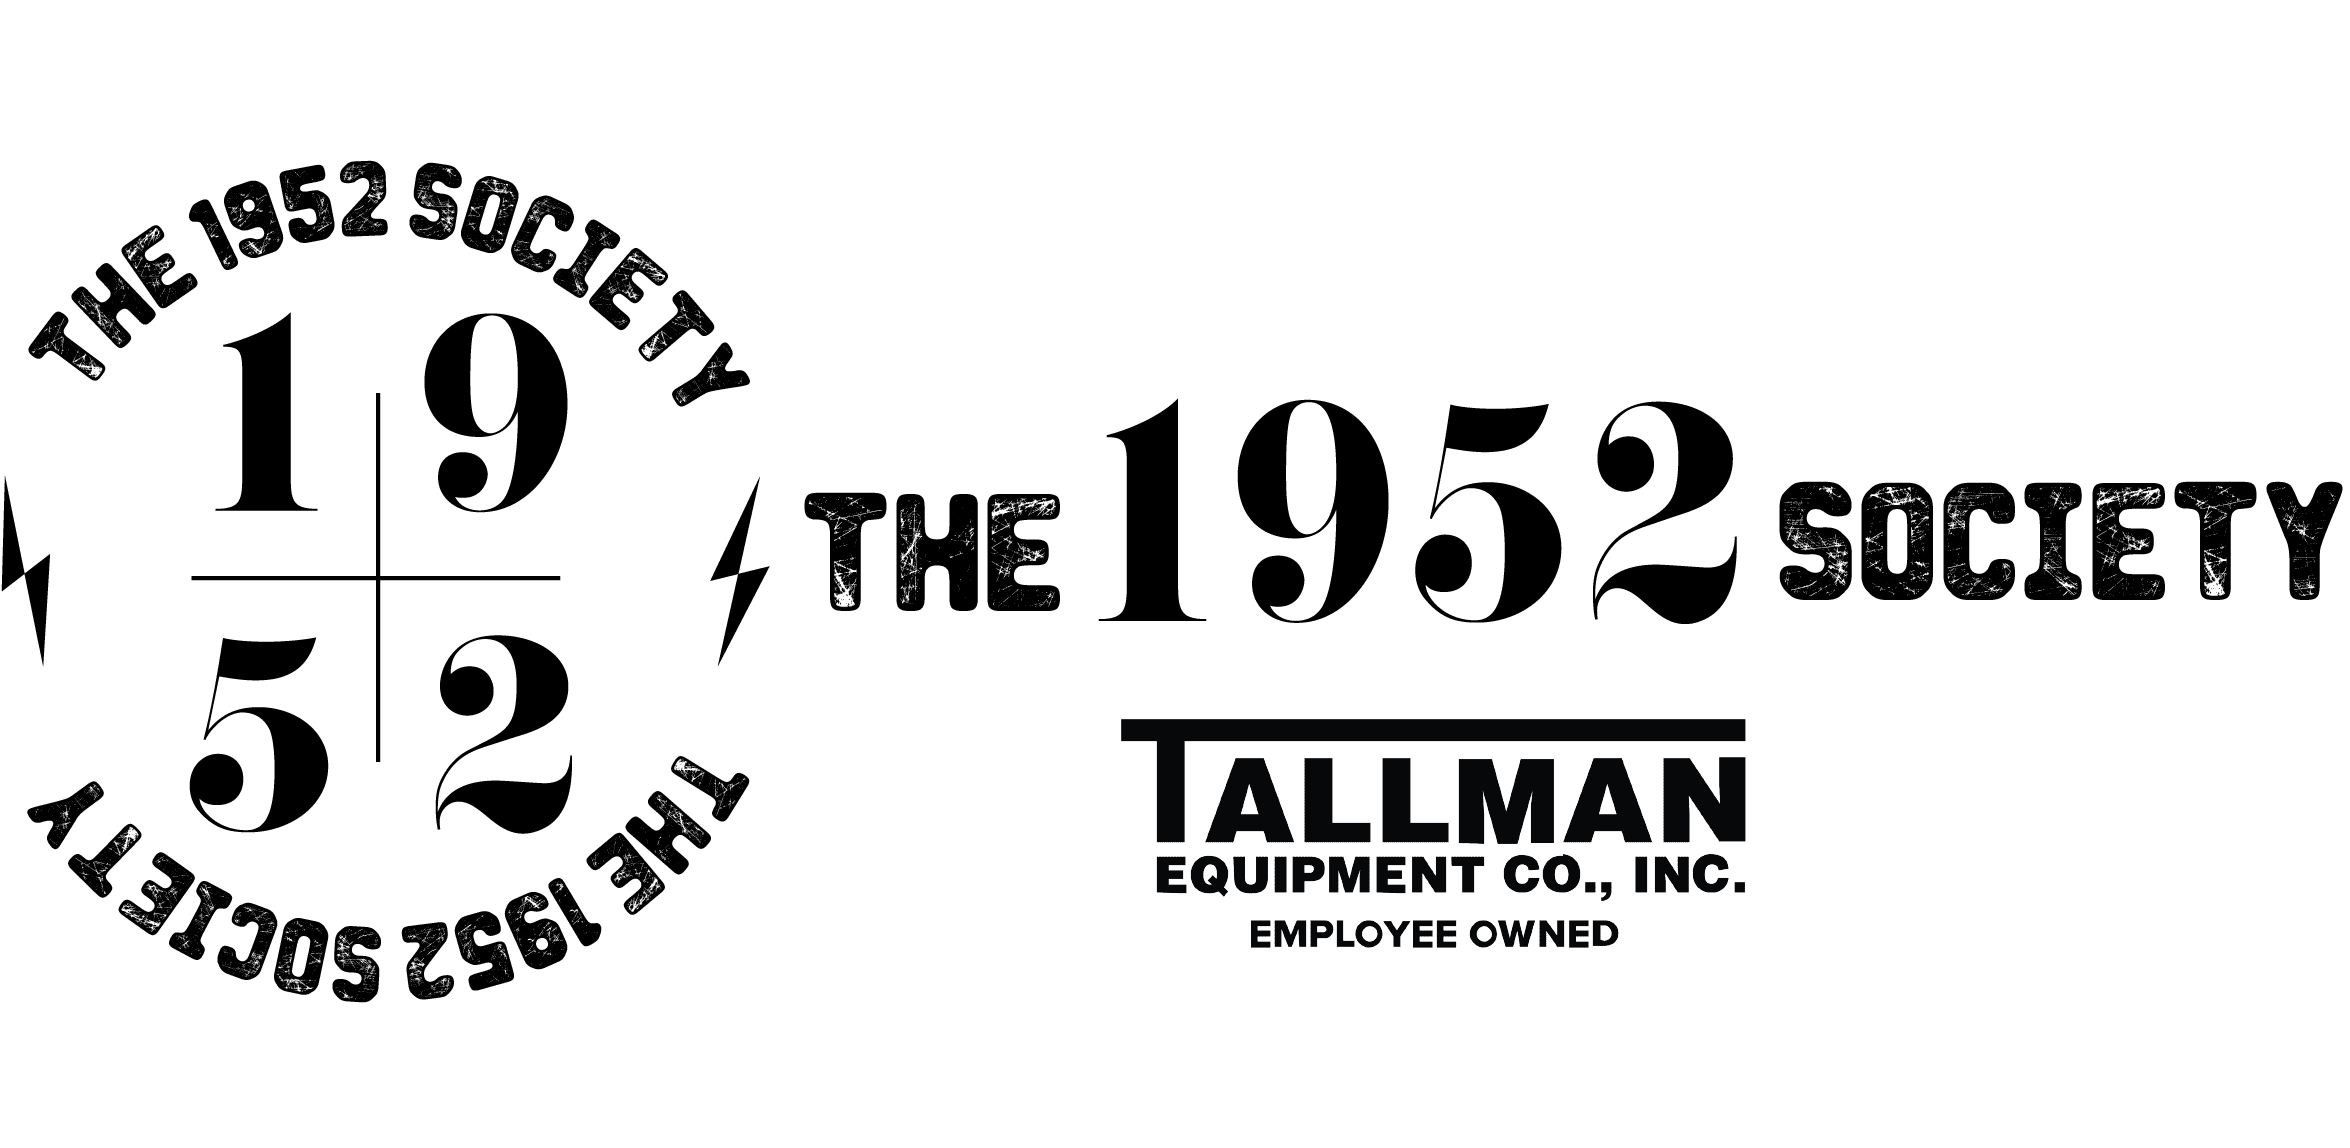 1952 Society Header logo. tallman